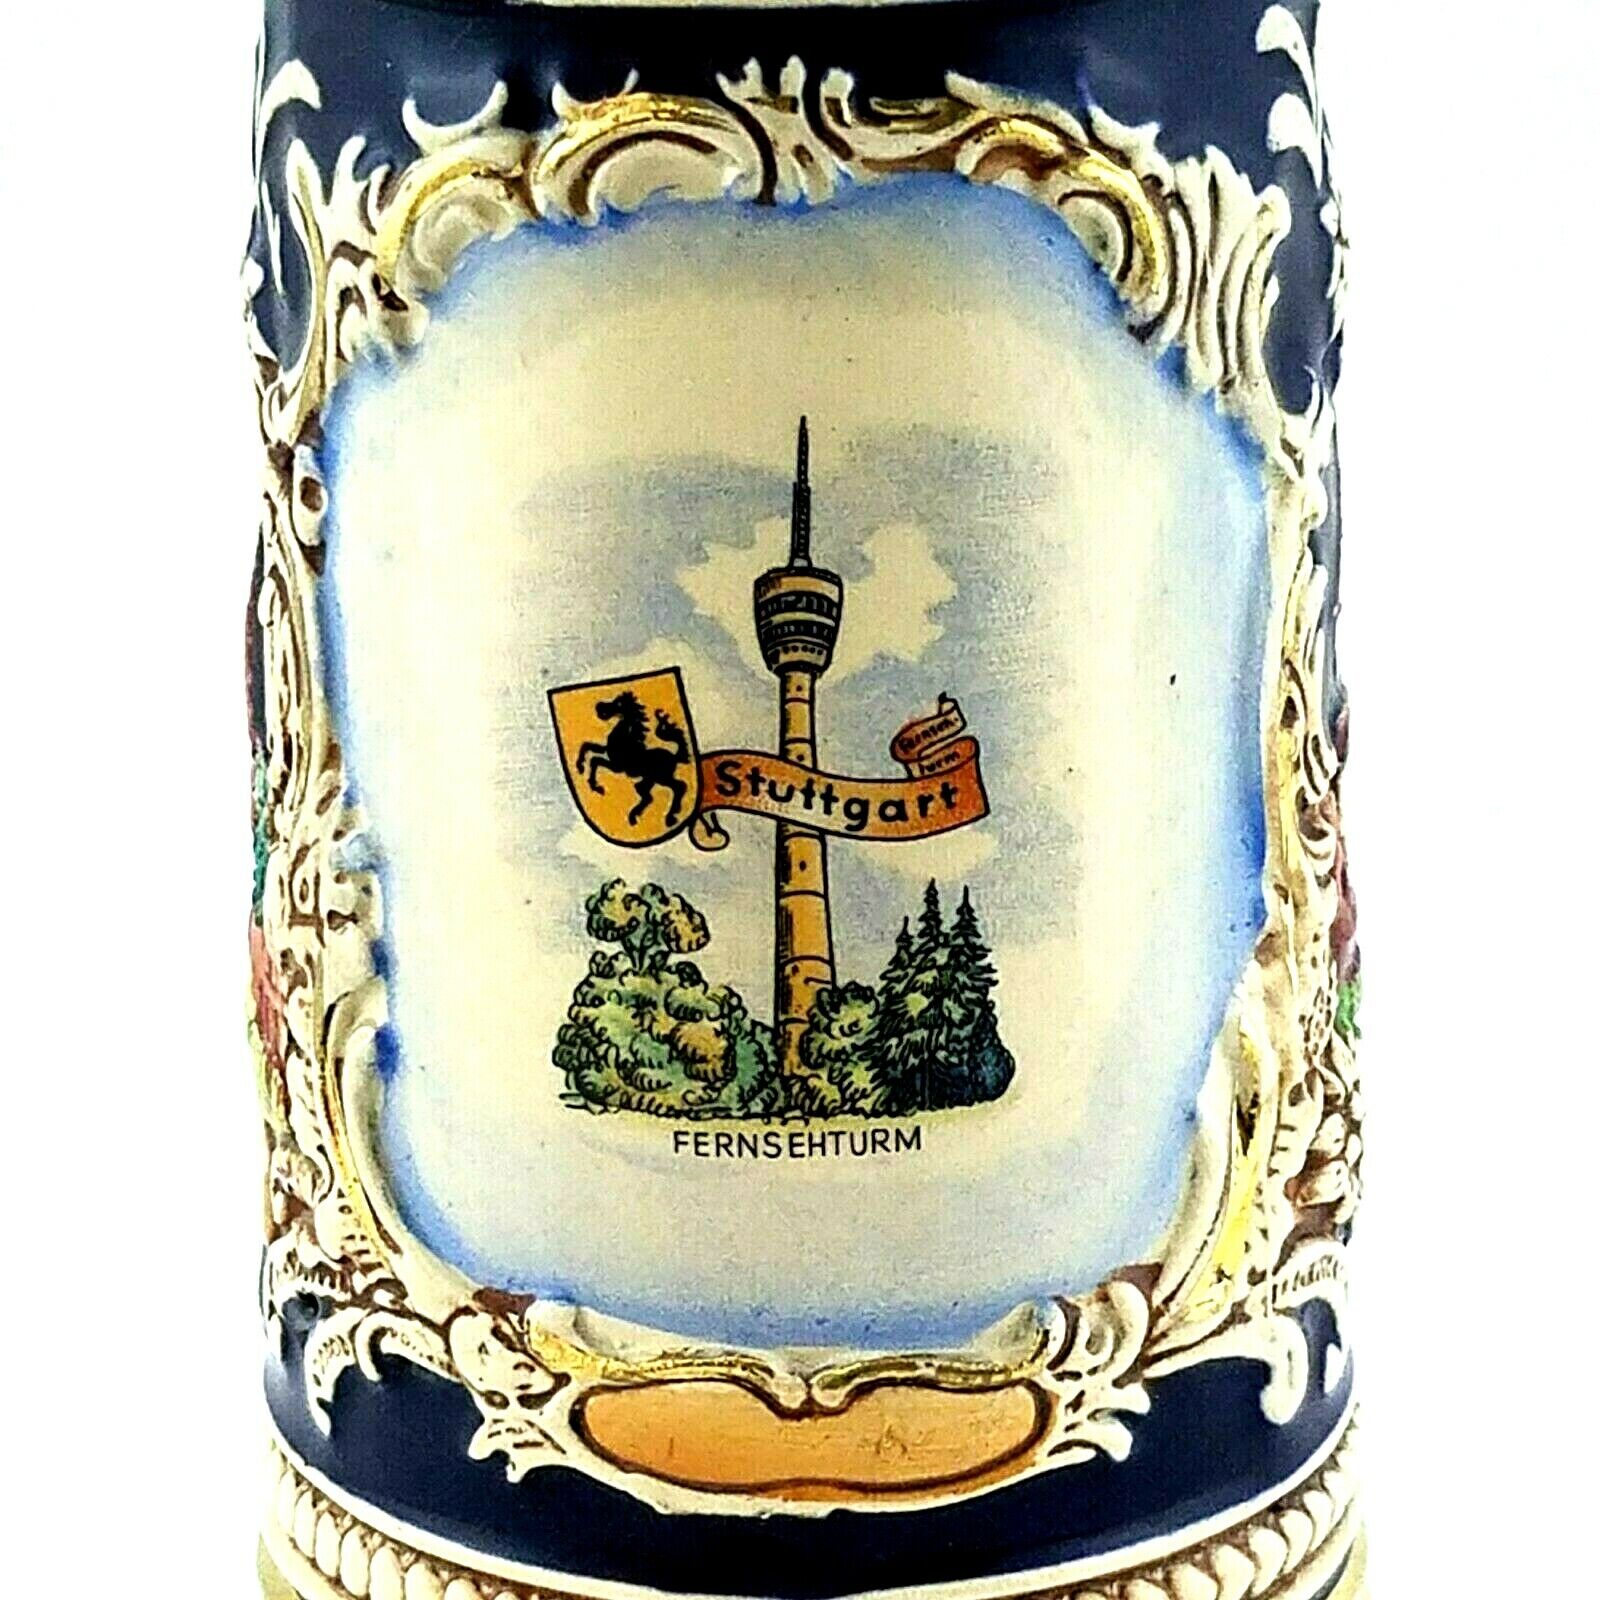 Vtg DBGM German Beer Stein Pewter Lid STUTTGART Cobalt Crest Cottage Floral 73 *